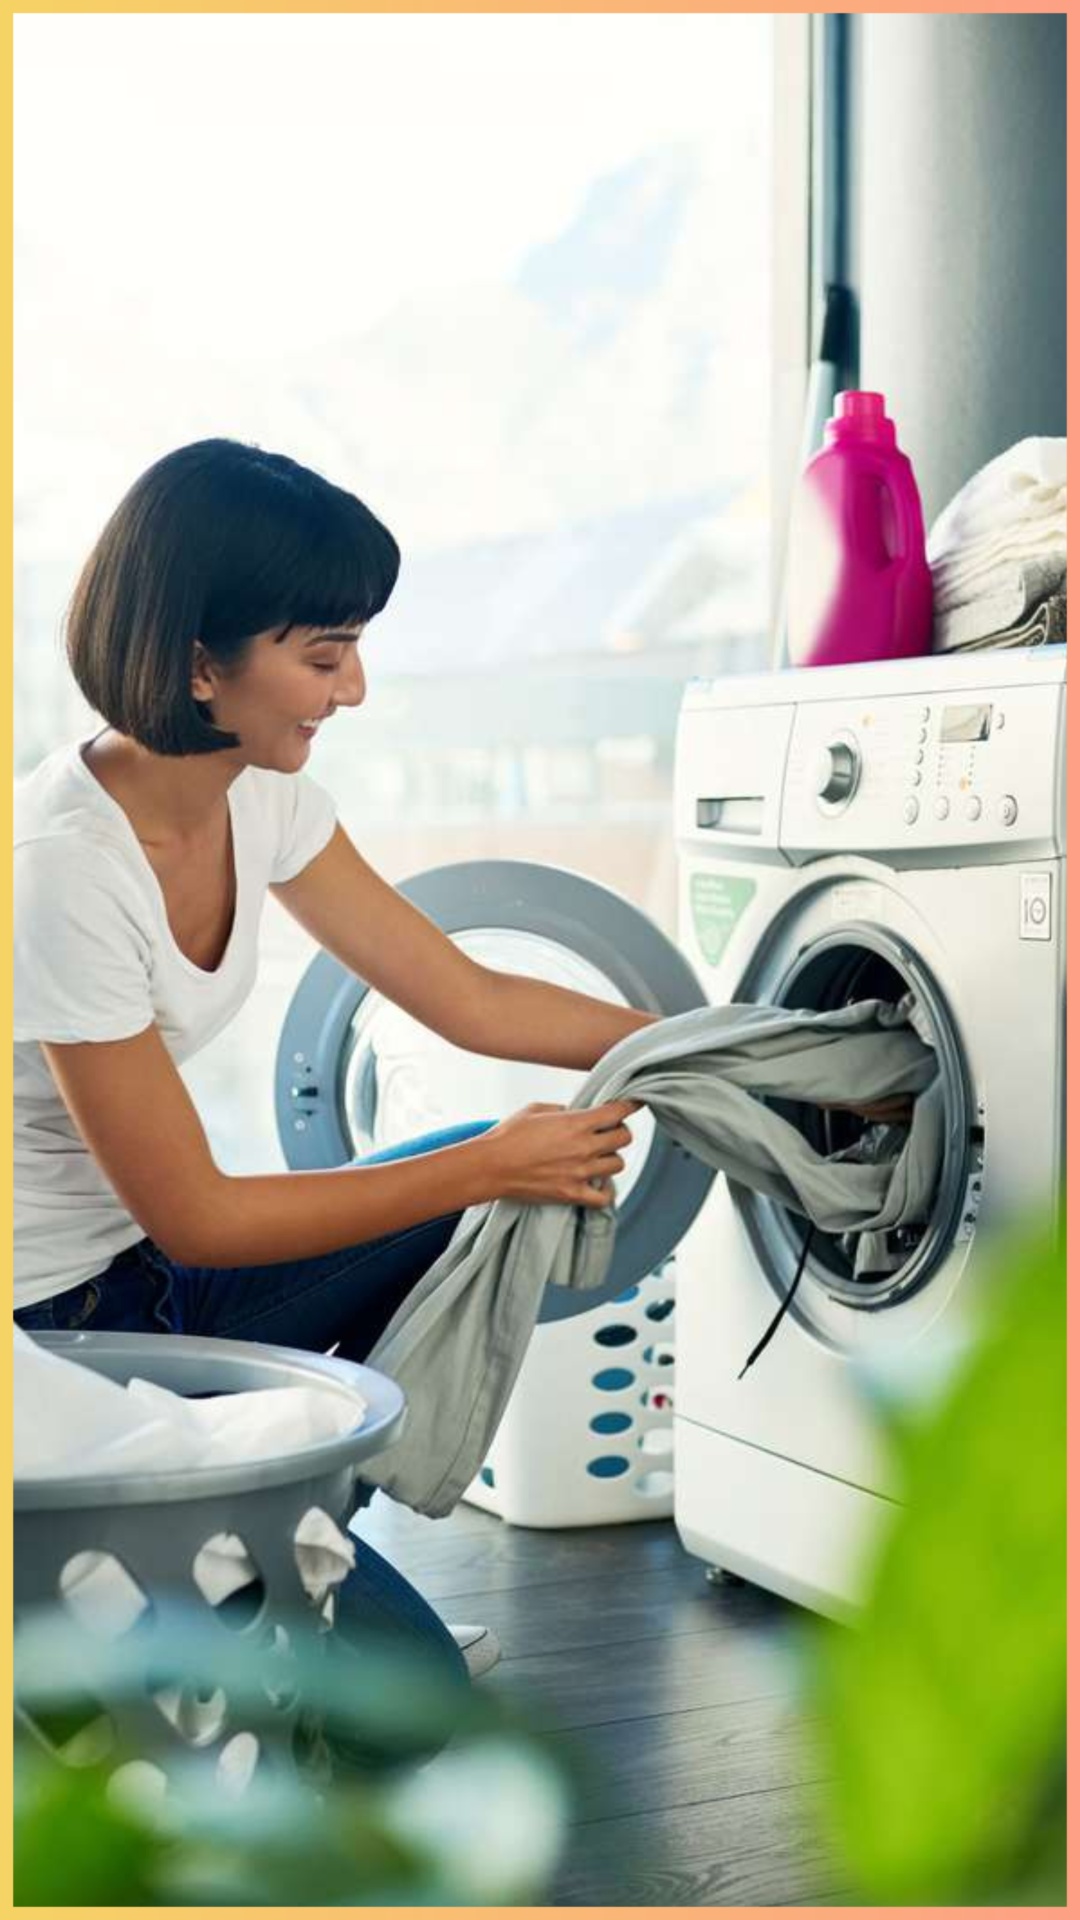 किन ऊनी कपड़ों को वाशिंग मशीन में नहीं धोना चाहिए